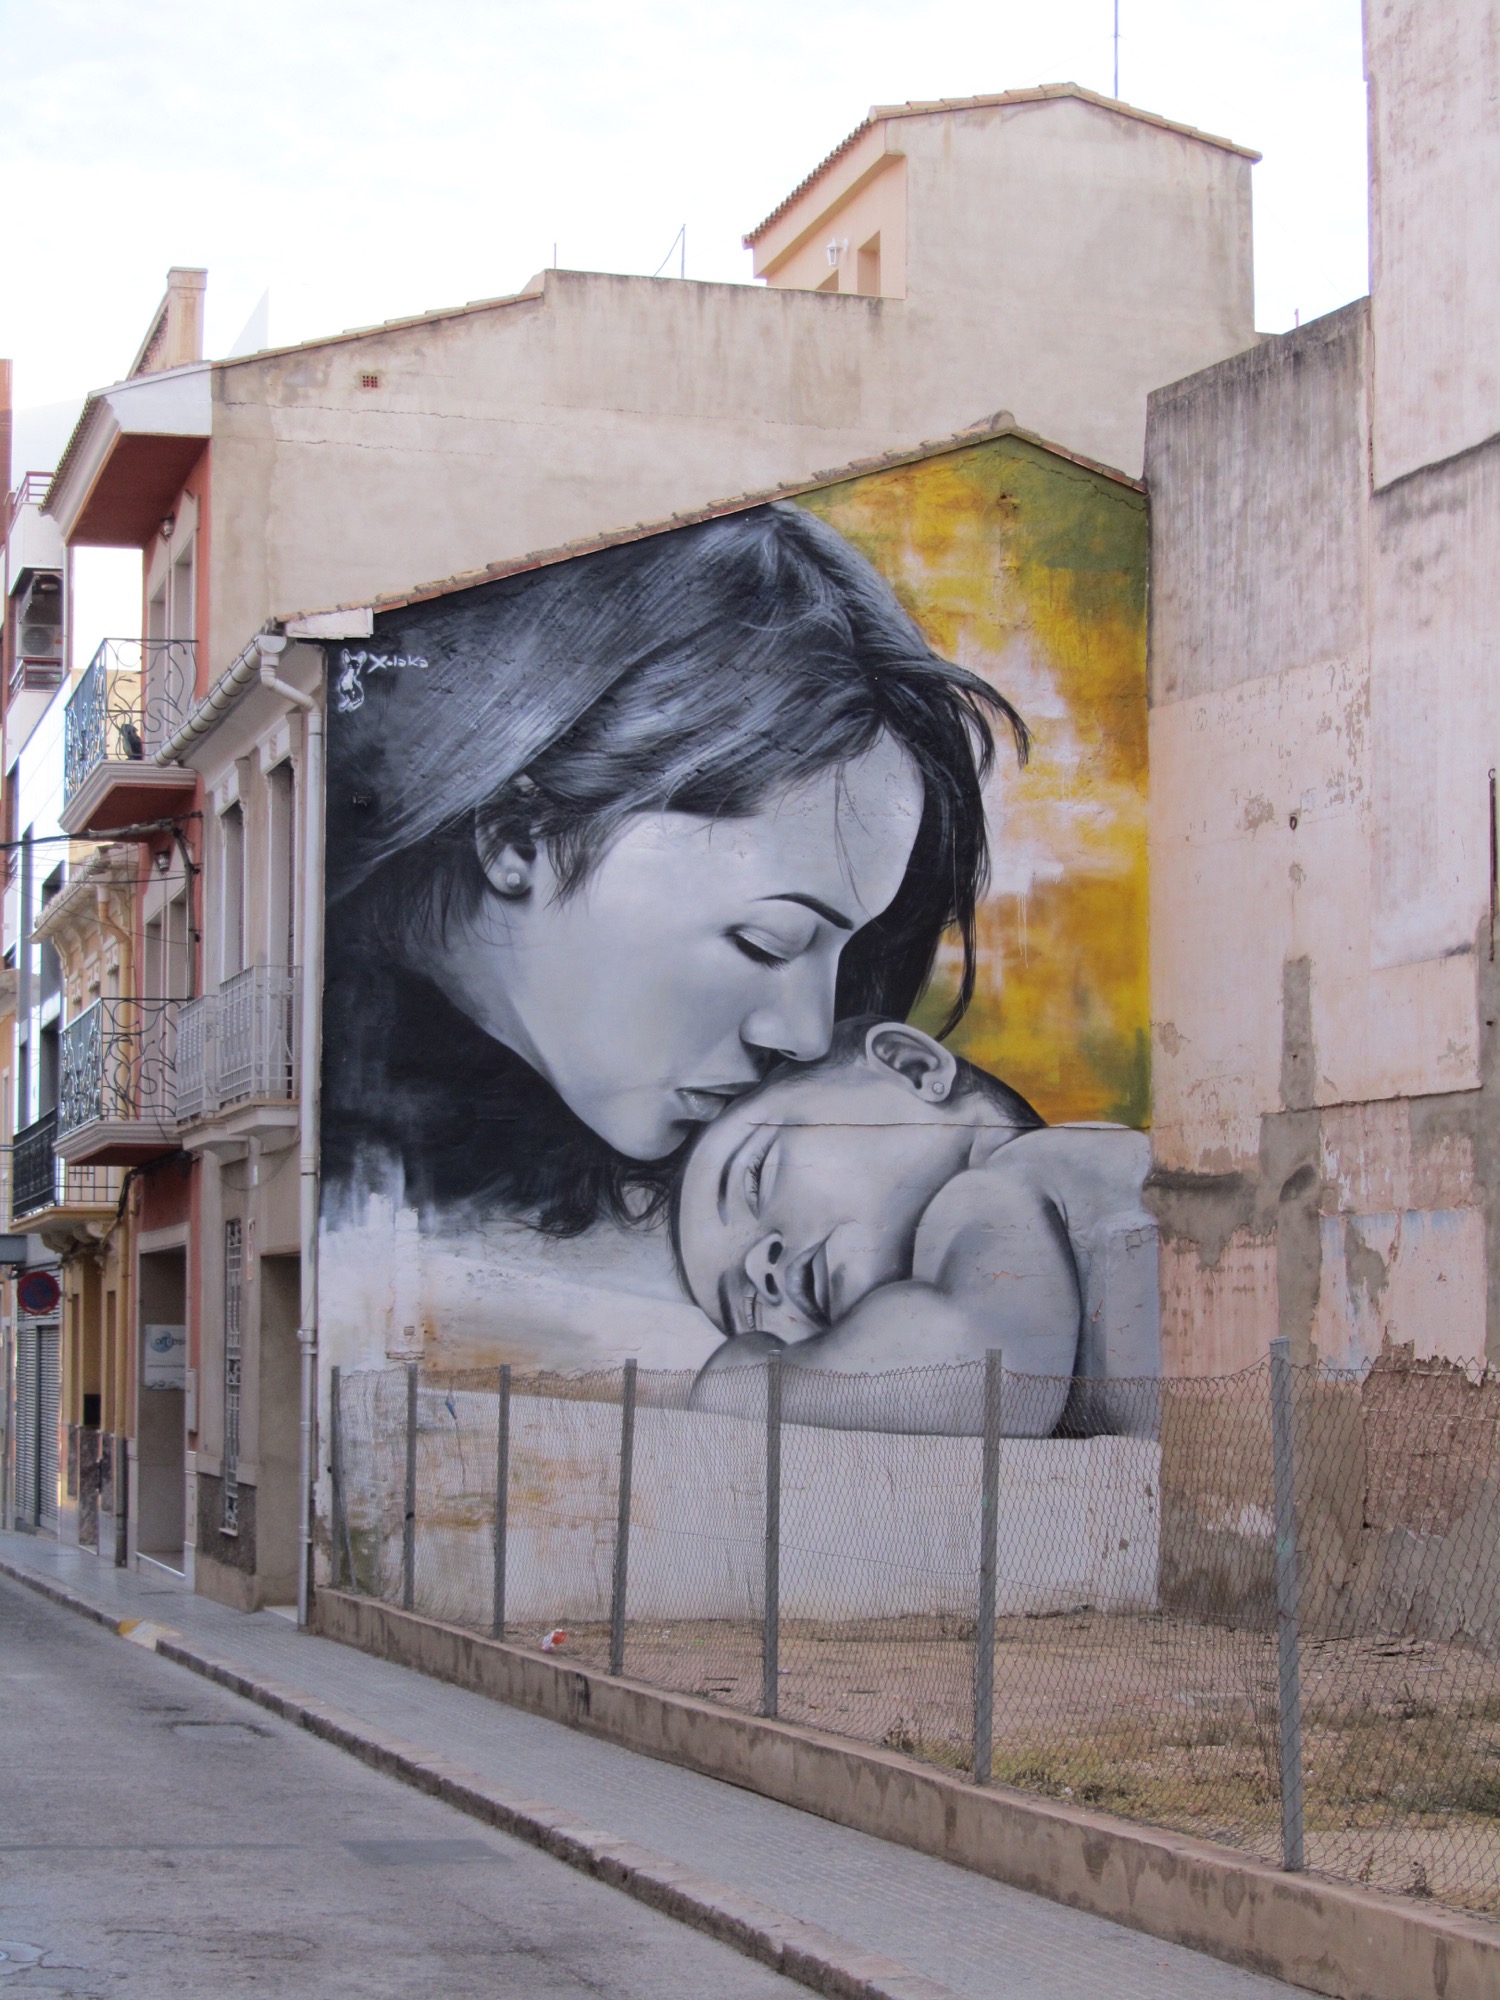 Graffiti 4227 The Mother and Her Child de Xolaka capturé par elettrotajik à Picassent Spain